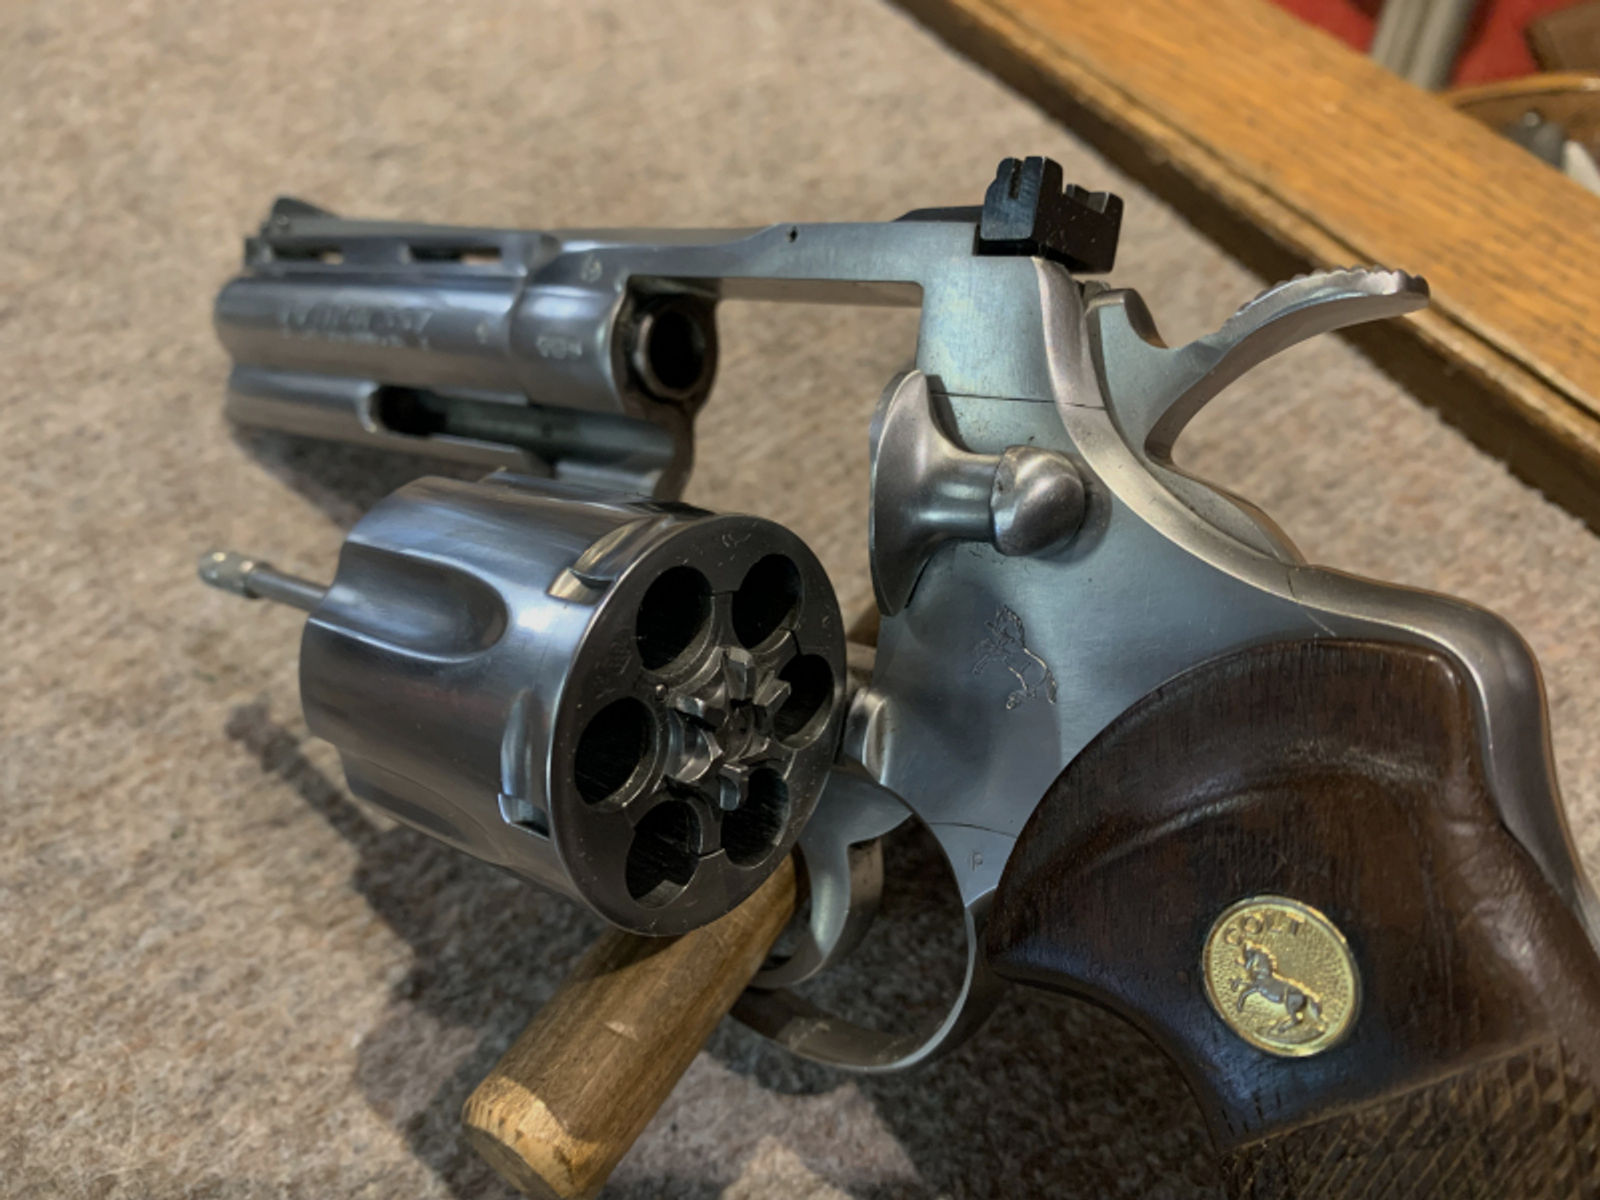 Revolver Colt Python kal 357 Mag Stainles 4" LL